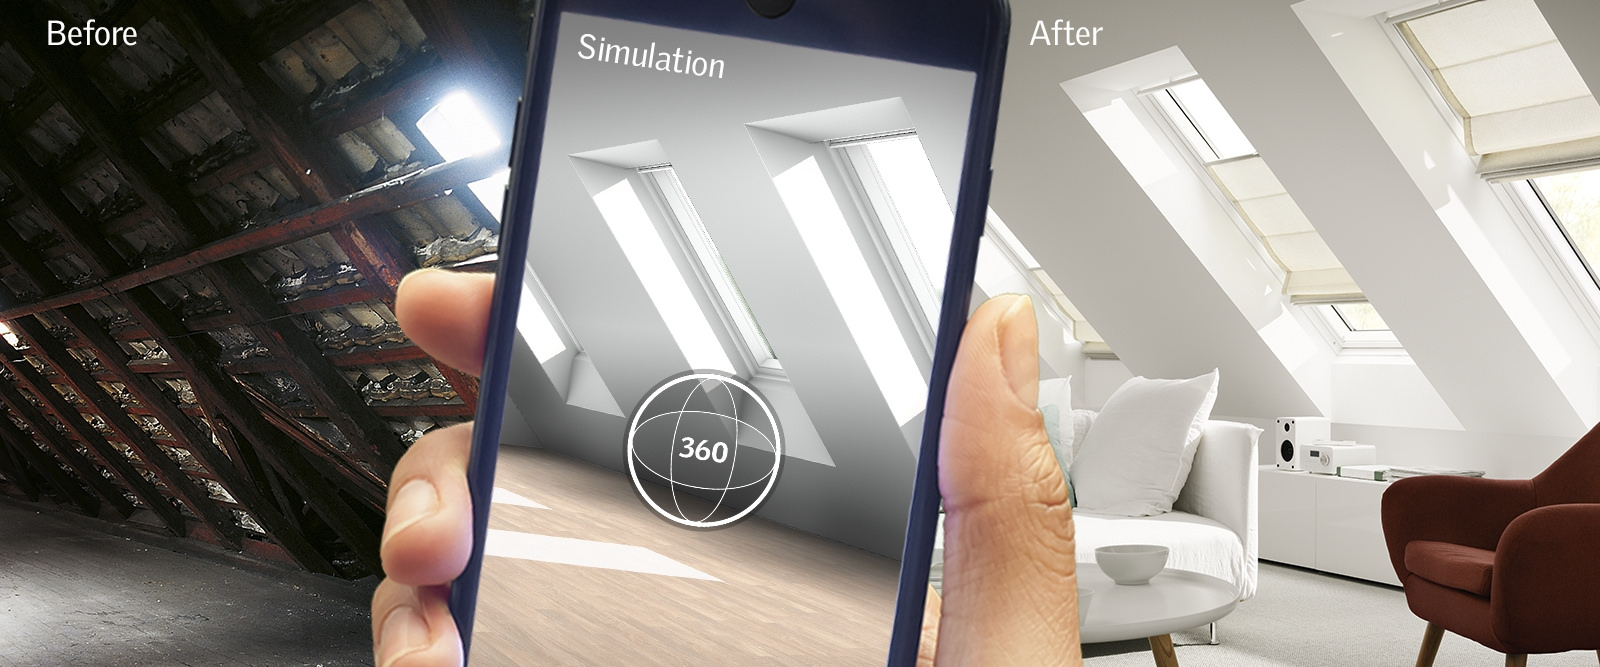 VELUX jako první představuje mobilní aplikaci pro práci s denním světlem ve virtuální realitě